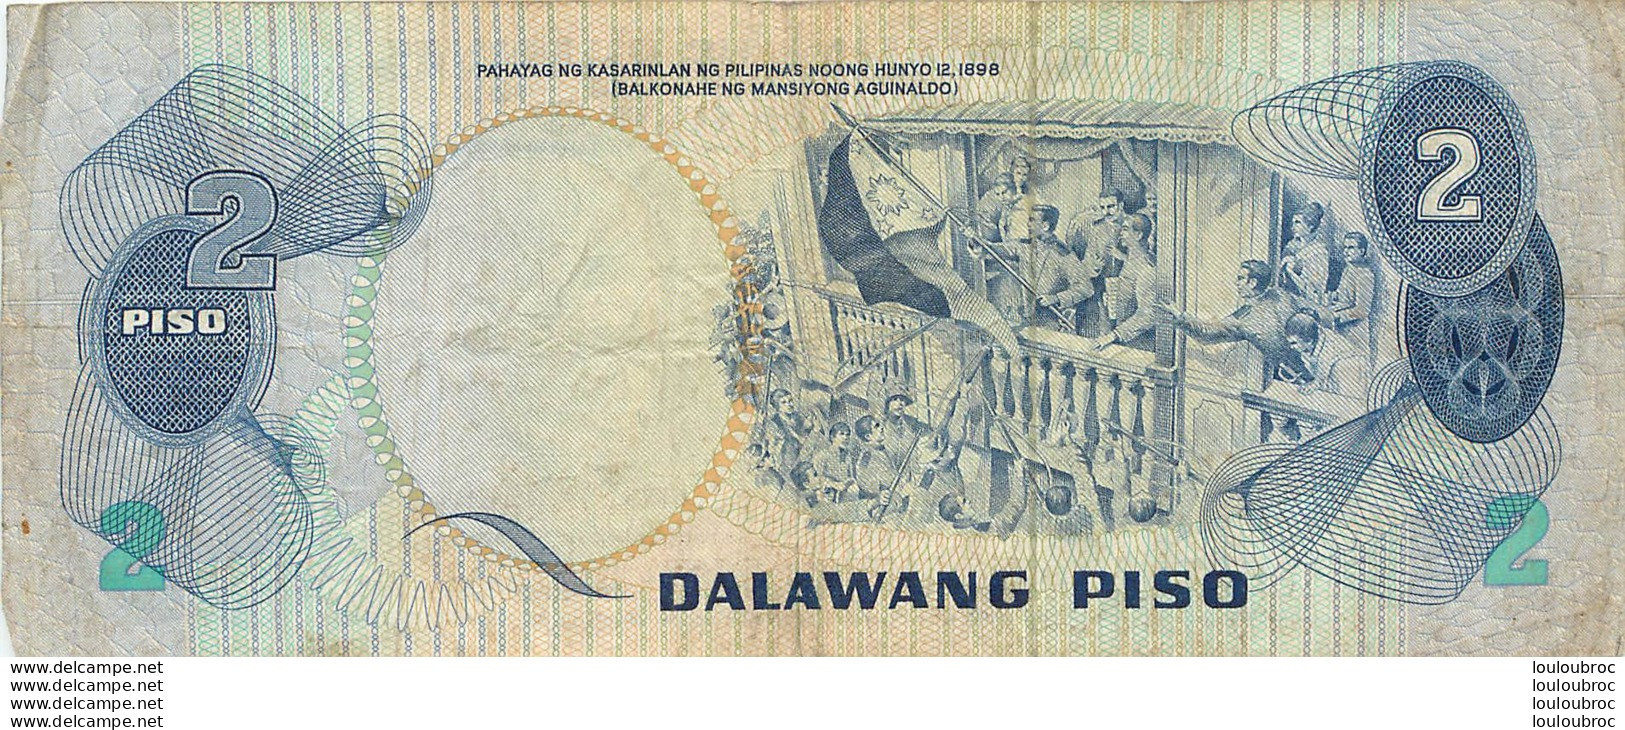 BILLET   REPUBLIKA NG  PILIPINAS 2 DALAWANG PISO - Philippines